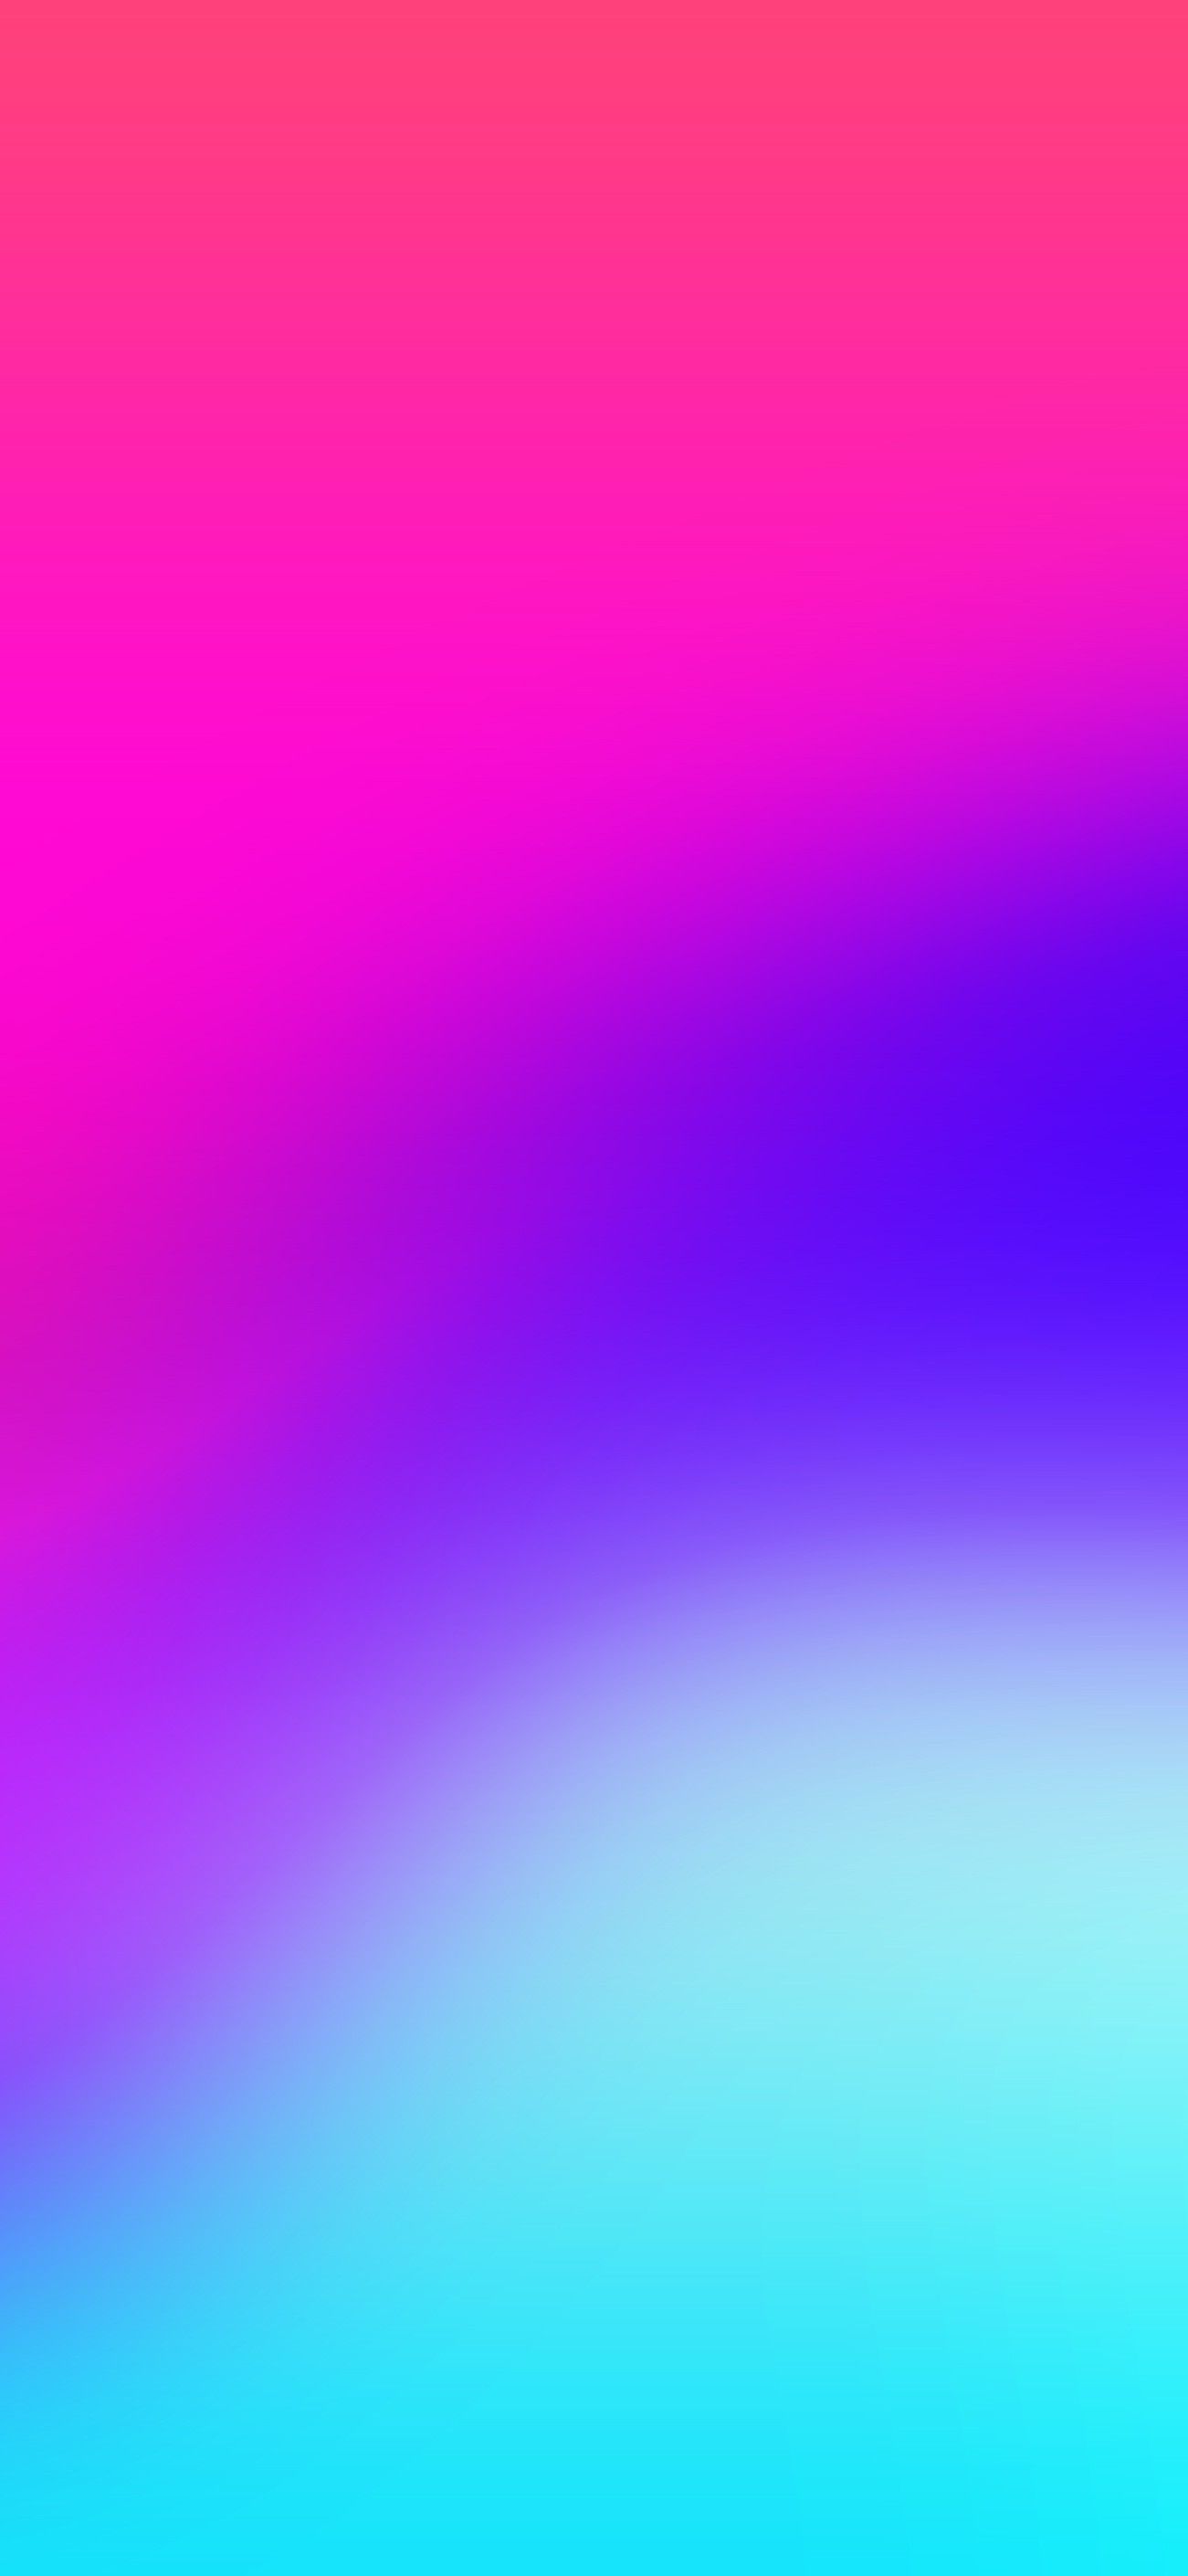 Pink Blue Wallpaper Iphone X - HD Wallpaper 